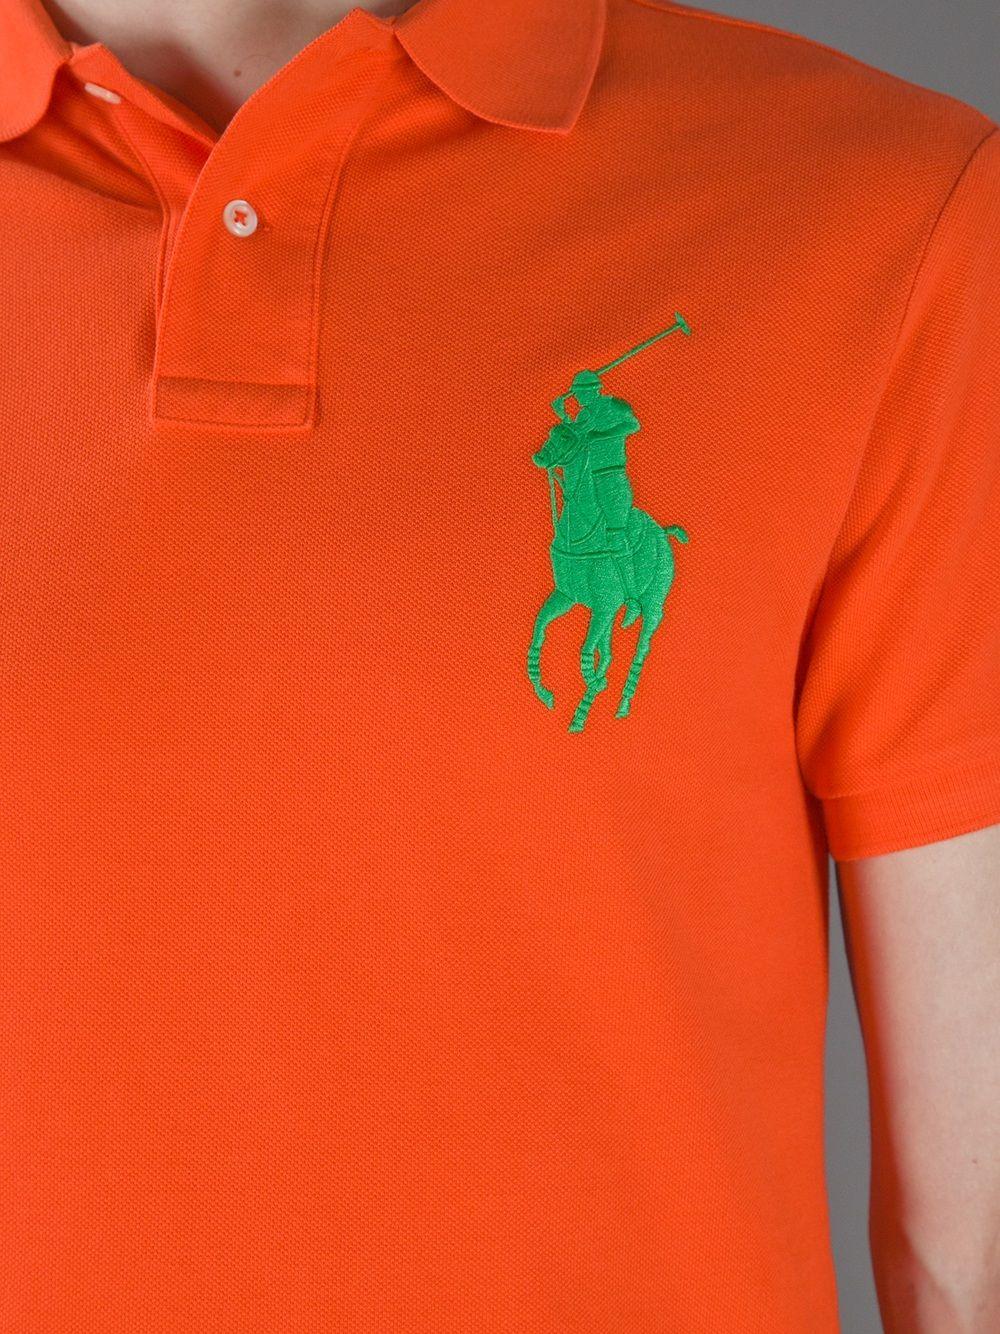 Green Polo Logo - Polo Ralph Lauren Logo Polo Shirt in Orange for Men - Lyst